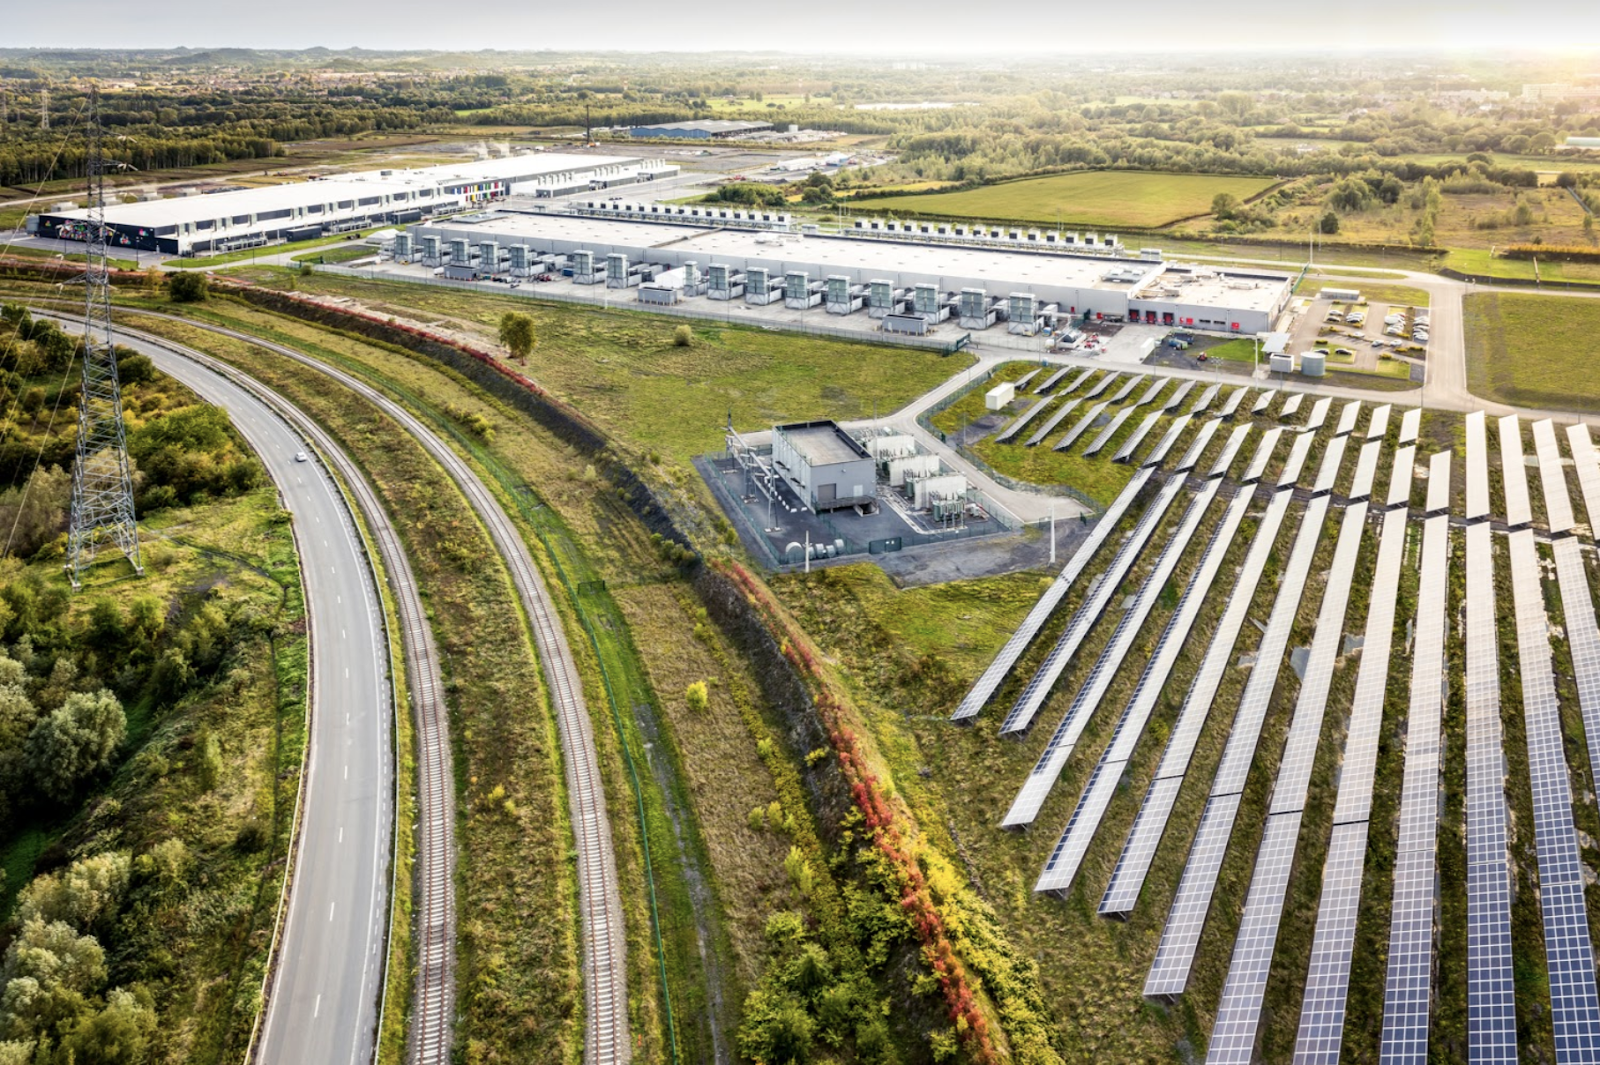 Pannelli solari di fianco al data center di Google in Belgio. Spostare i carichi di lavoro in diversi orari della giornata può aiutare ad allineare l'utilizzo di energia del data center con la disponibilità nella rete di energia solare, eolica o proveniente da altre fonti carbon-free.